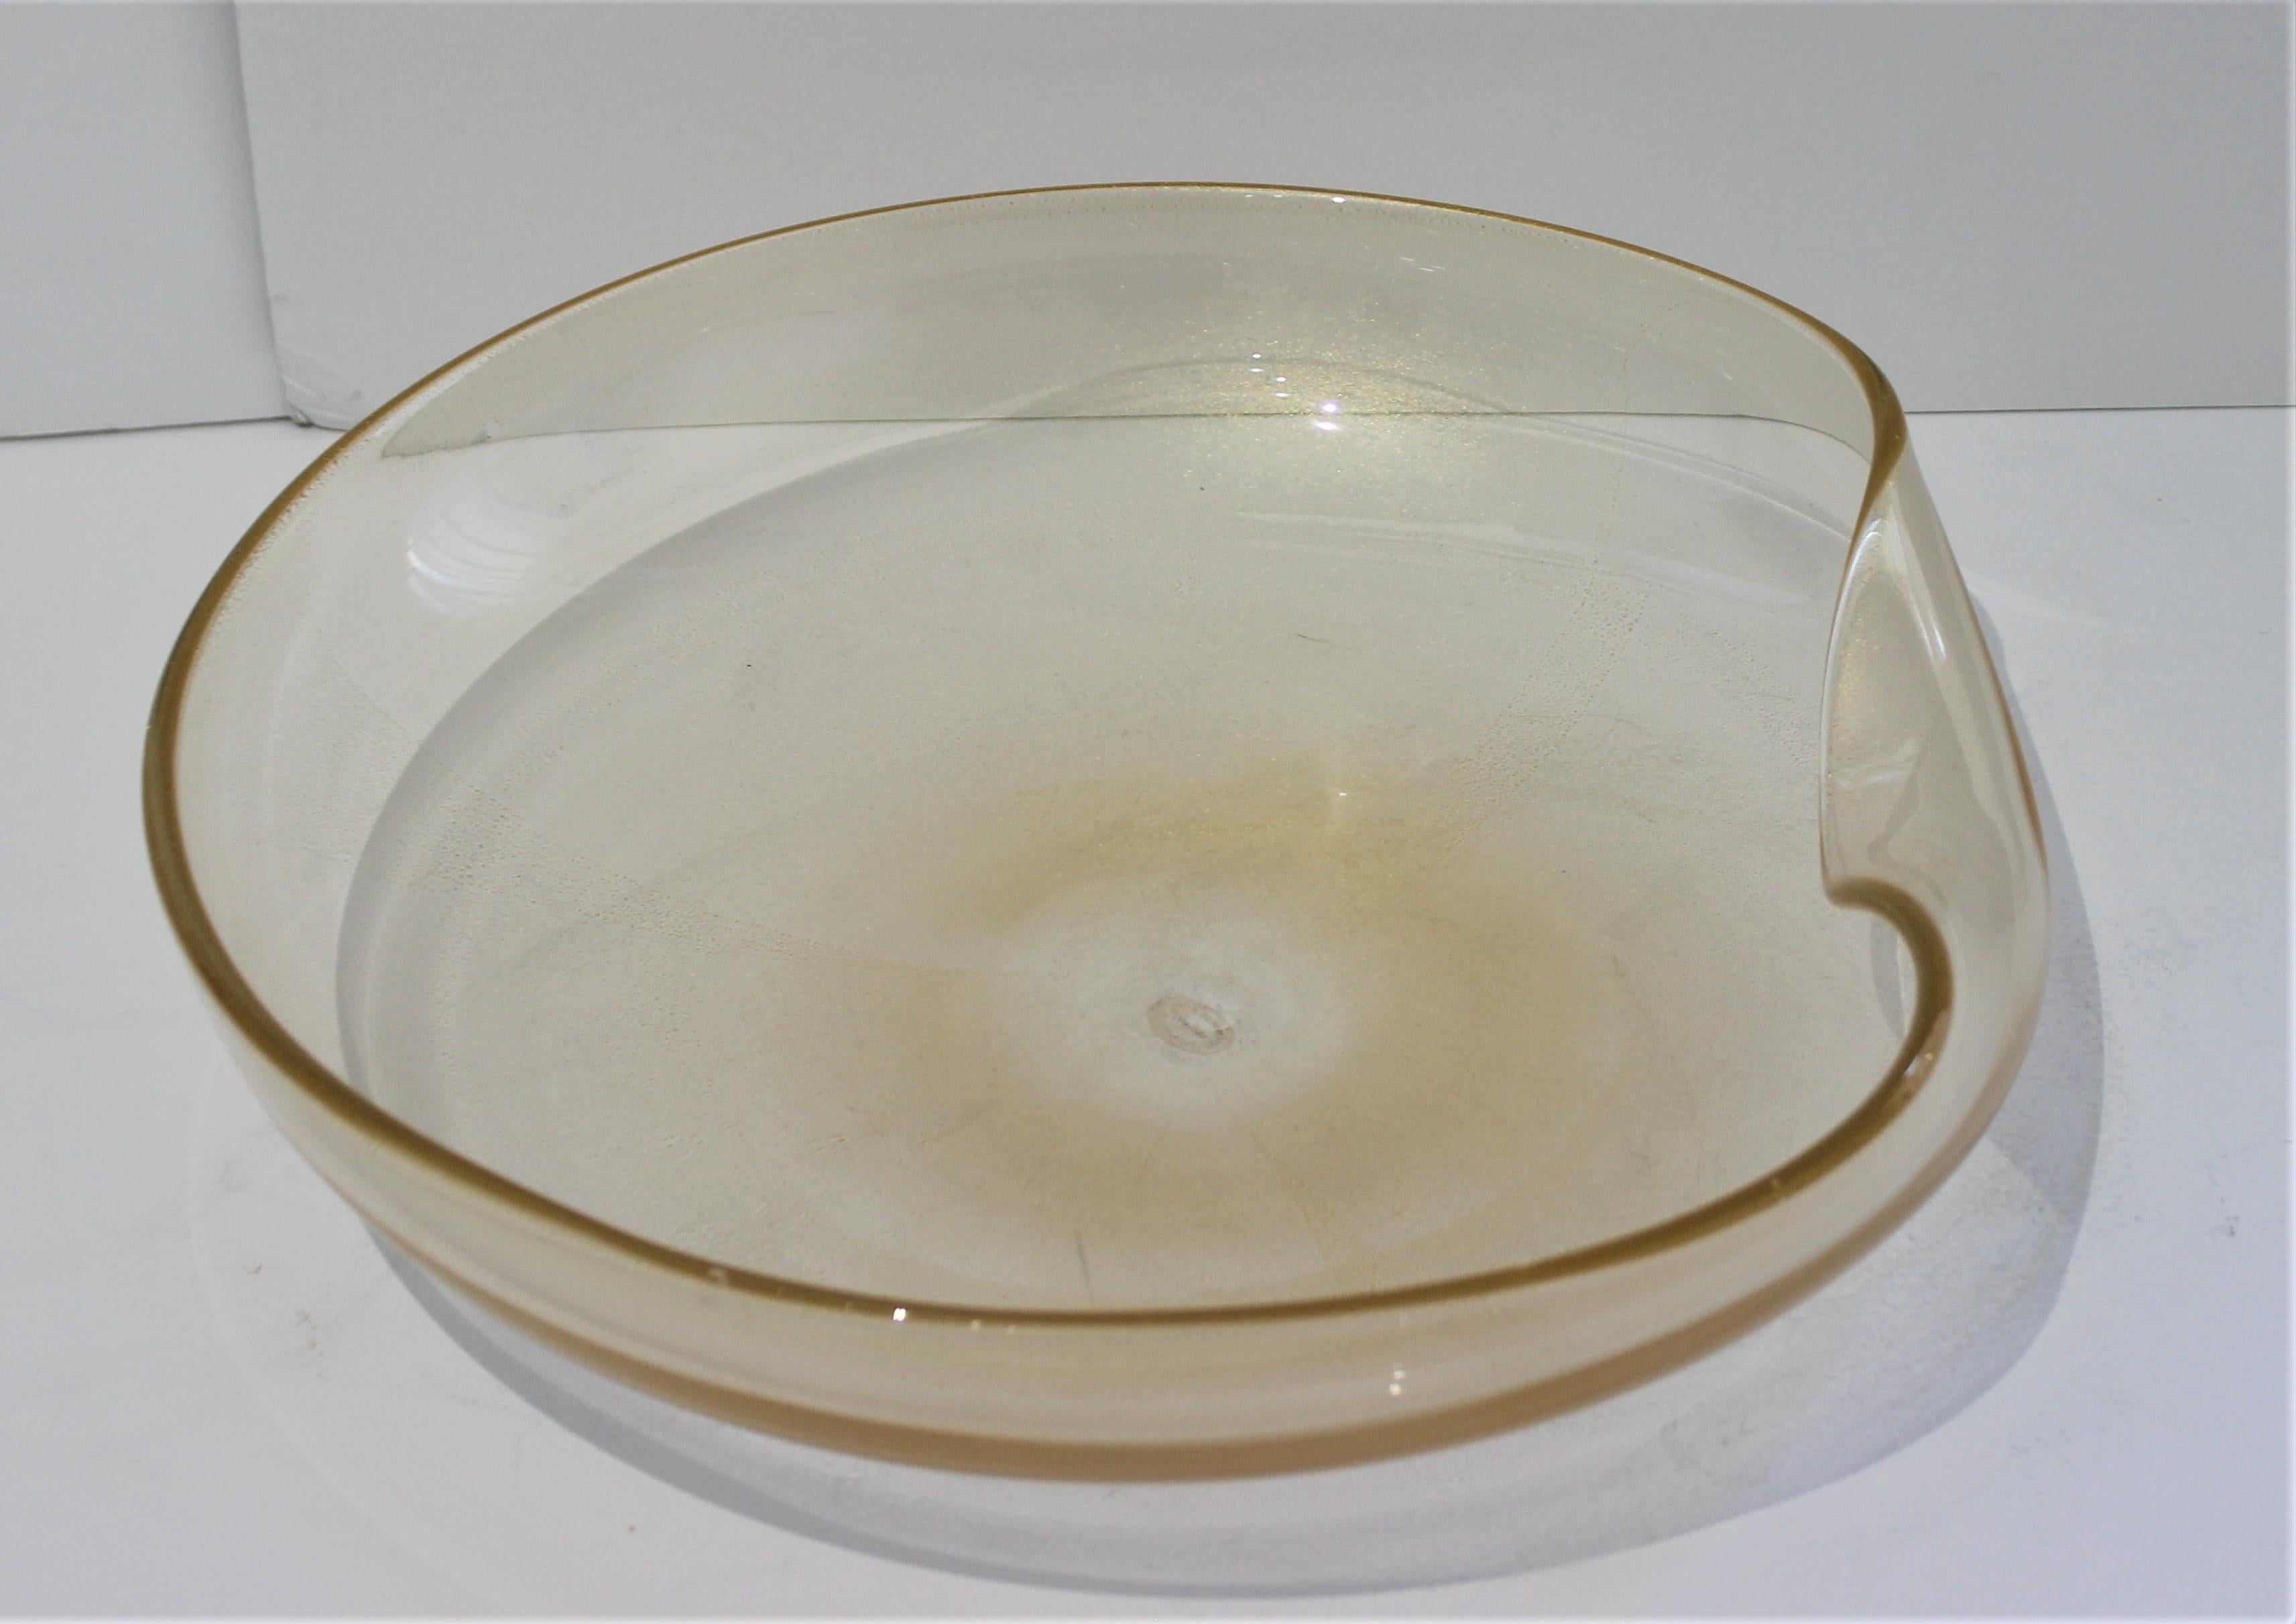 santangelo glass bowl